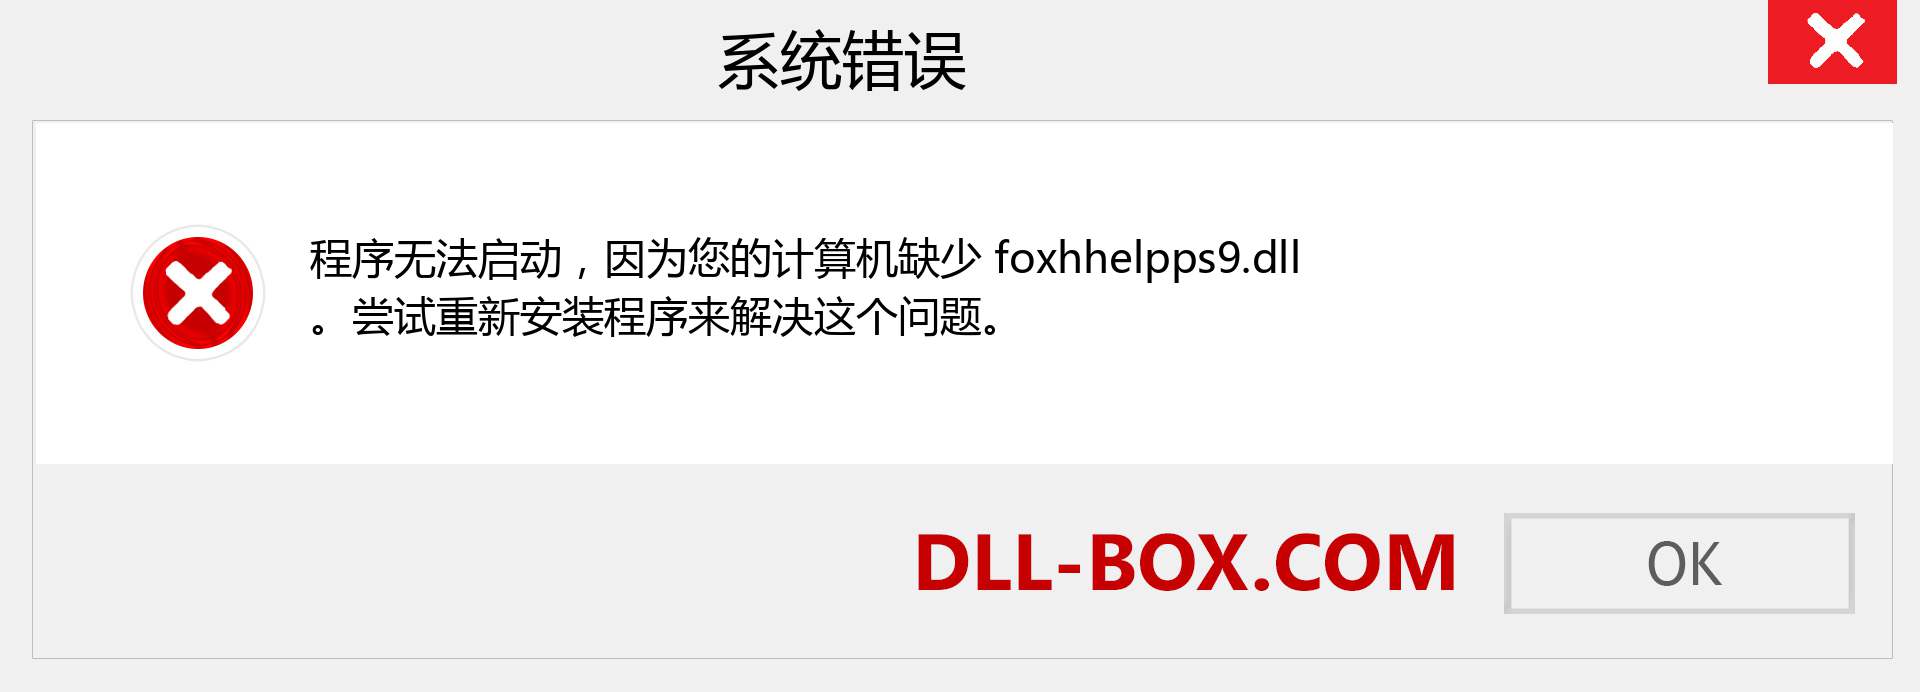 foxhhelpps9.dll 文件丢失？。 适用于 Windows 7、8、10 的下载 - 修复 Windows、照片、图像上的 foxhhelpps9 dll 丢失错误